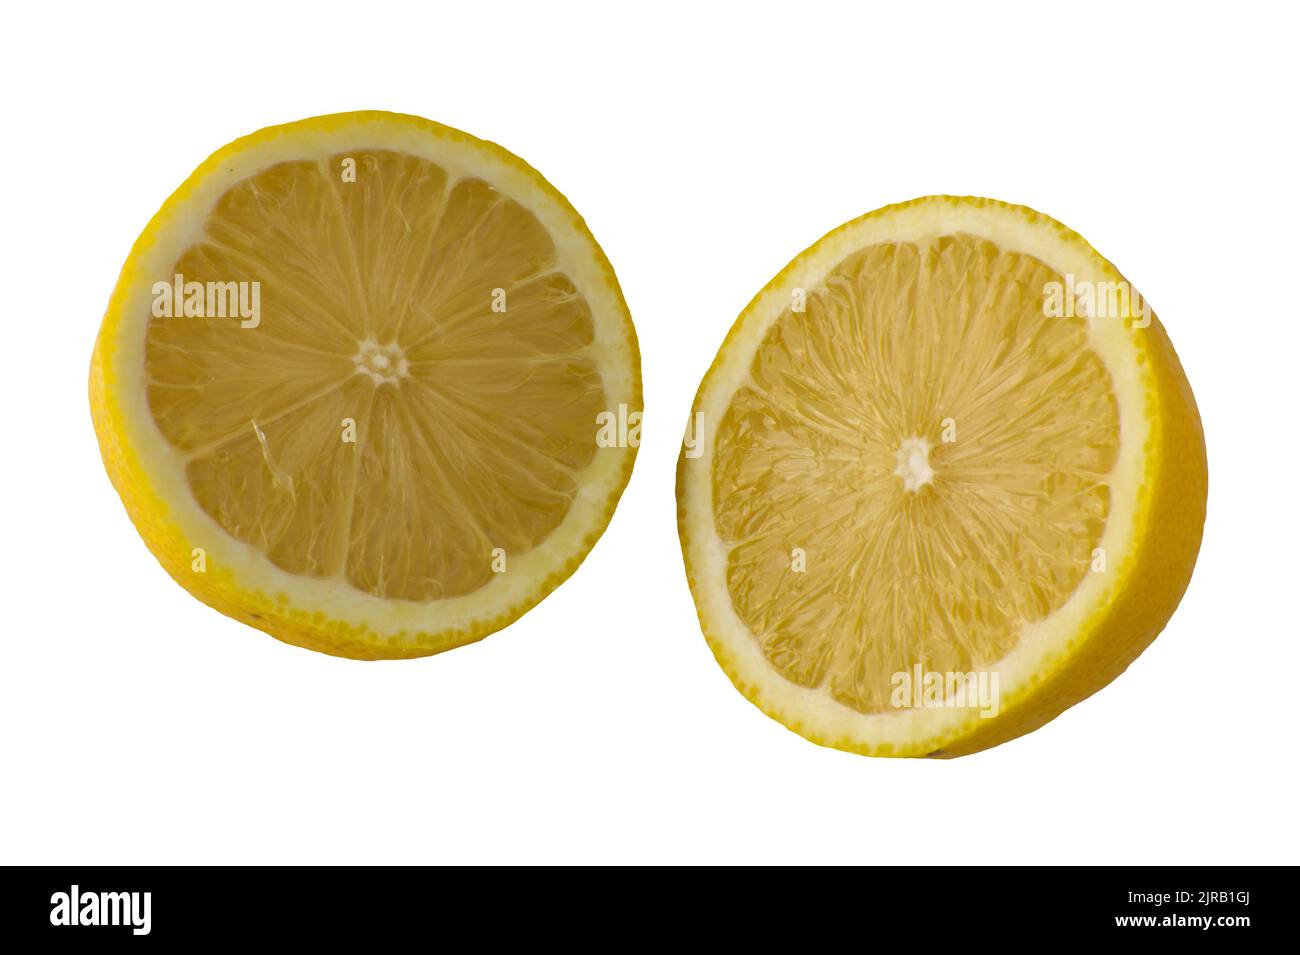 Citron entier coupé en deux. (citrons limon, rutaceae). Isolé sur fond blanc. Banque D'Images